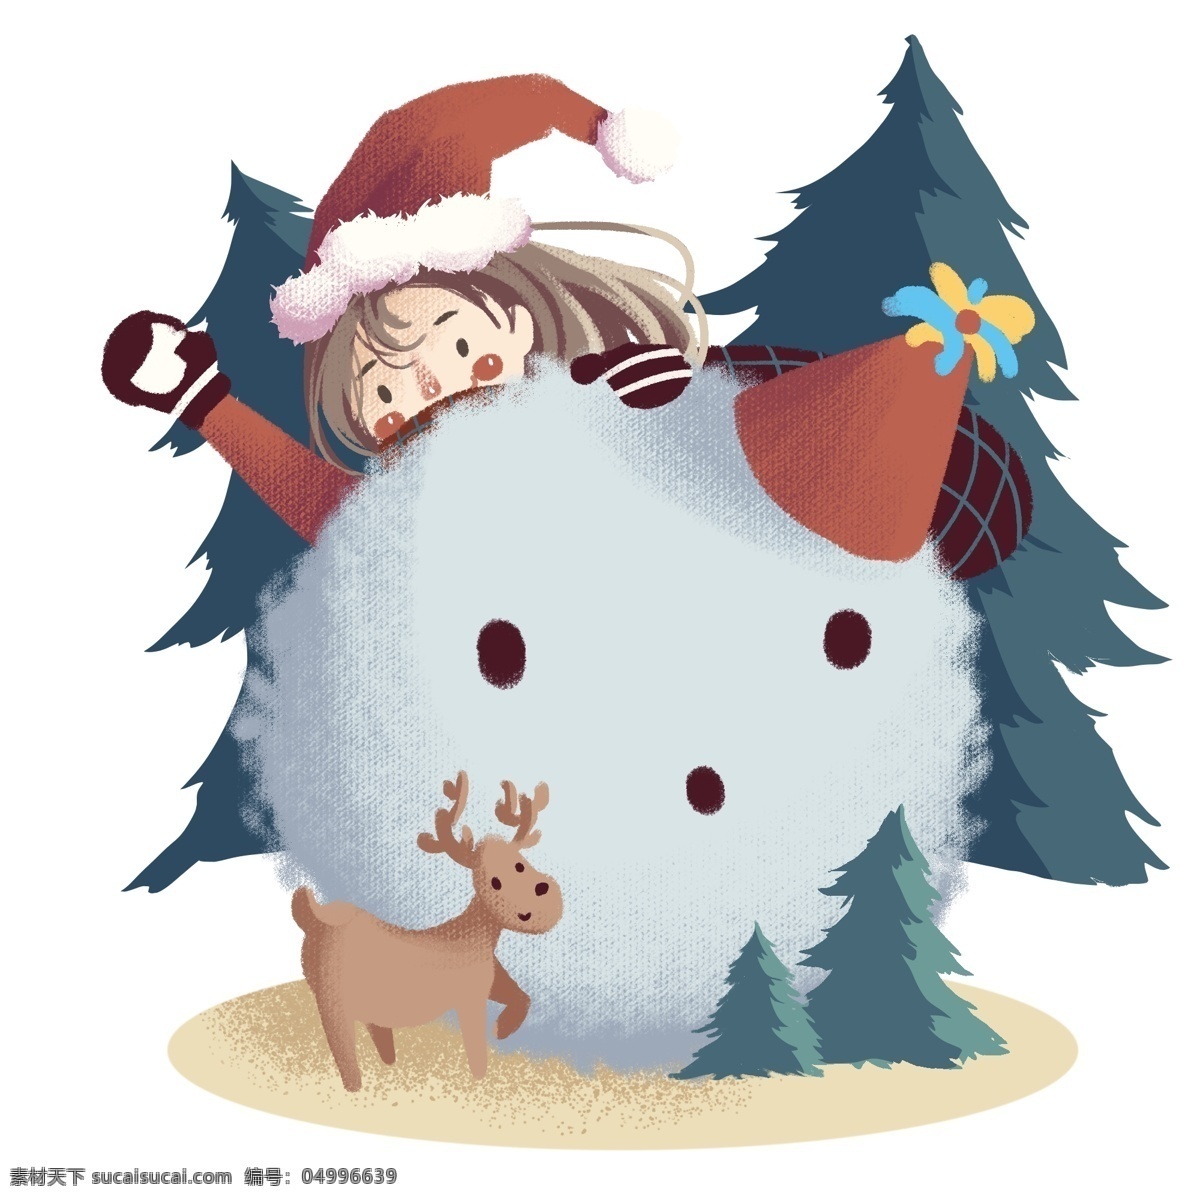 手绘 圣诞节 可爱 女孩 戴 圣诞 帽 大雪人 驯鹿 圣诞树 雪松 卡通 圣诞节场景